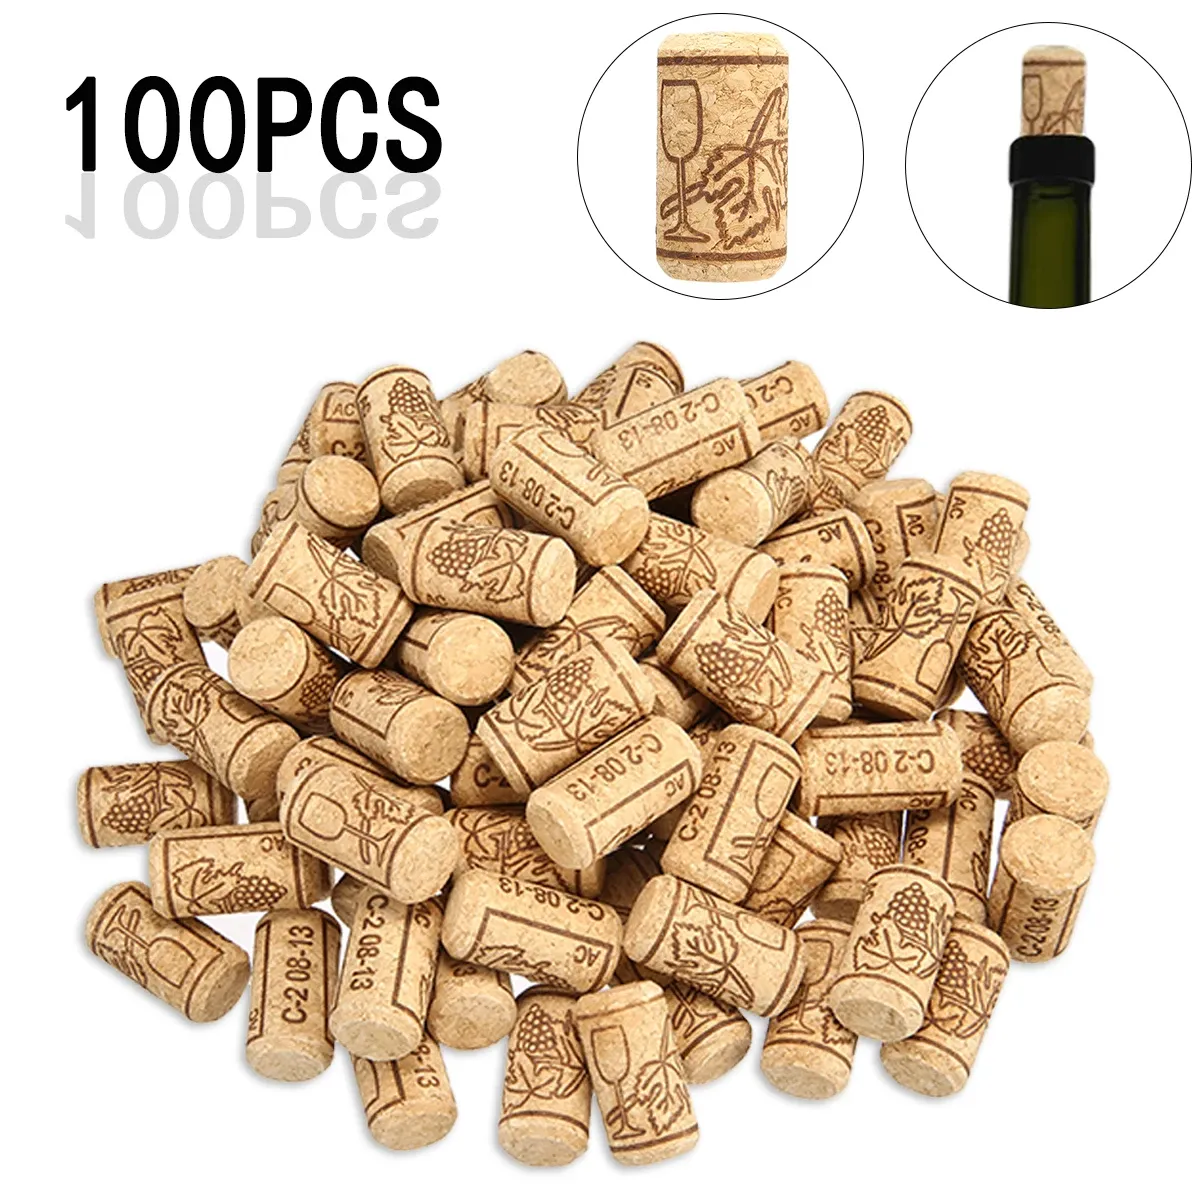 Tillbehör 100st/Lot Wine Cork Bungs Beer Diy Wine Bottle tätning Stopper Bungs Plug 21*40mm Home Brewing Wine Bottle Cork Bungs Supplies